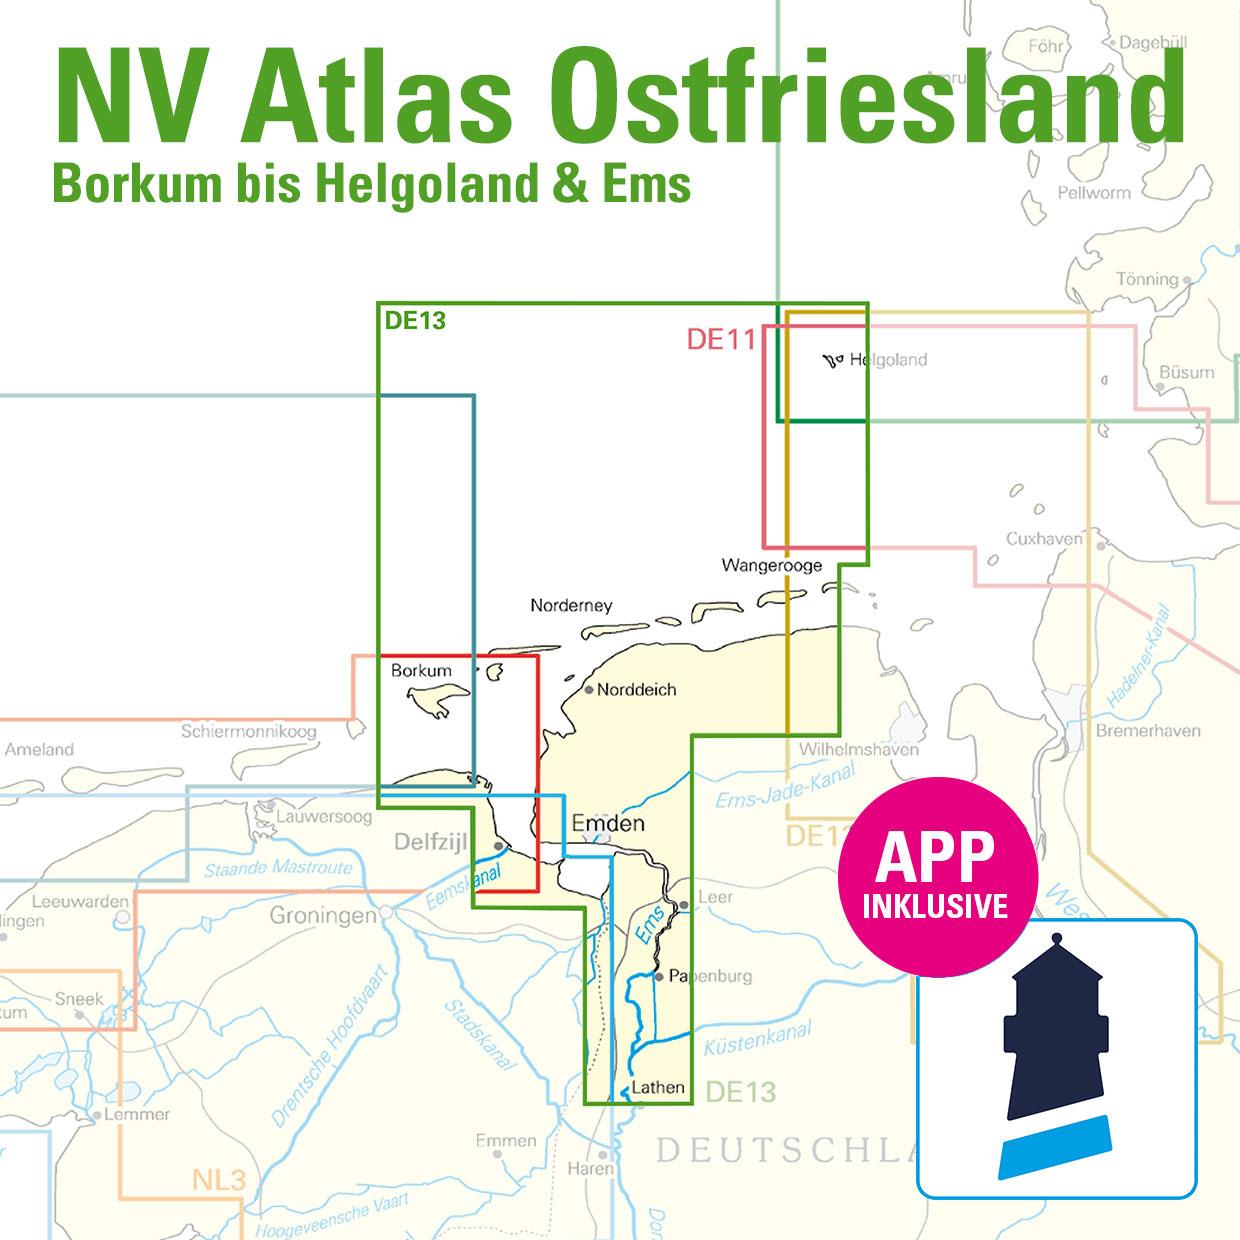 NV Charts Nordsee DE13 - Ostfriesland, Borkum bis Helgoland & Ems